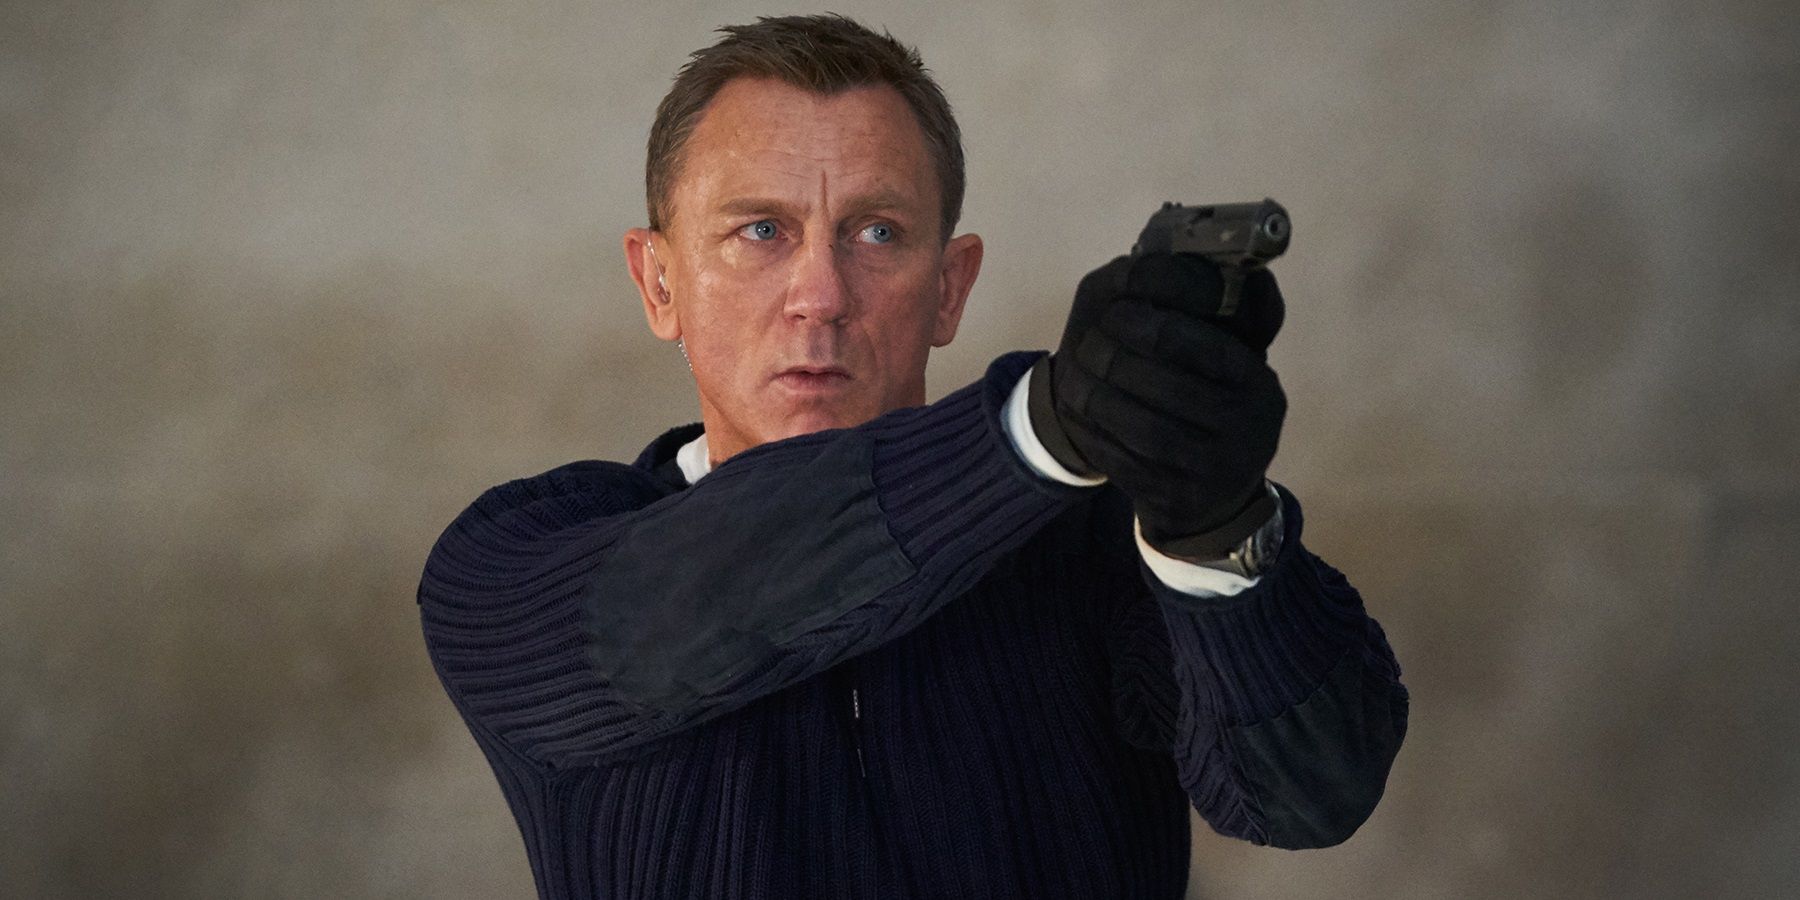 سيرشح دانيال كريج للتشغيل كـ 007 كأحد الأفضل على الإطلاق